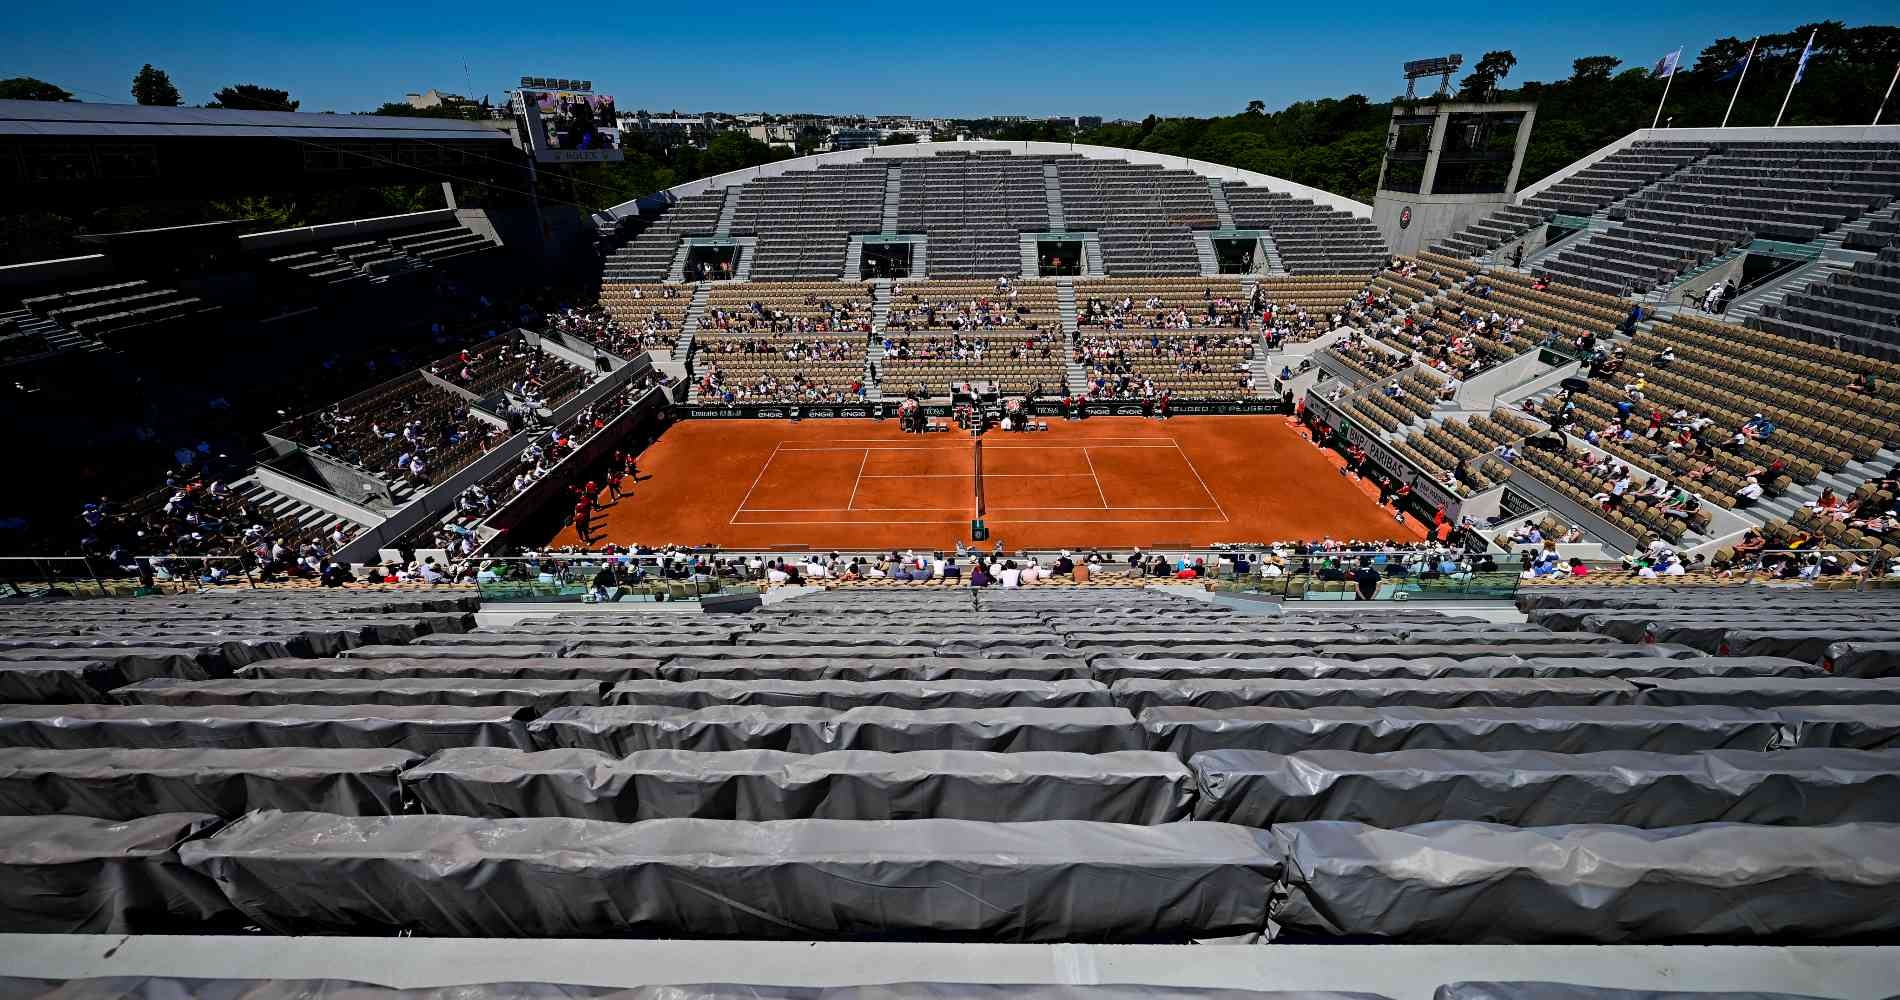 Roland-Garros, Suzanne-Lenglen court